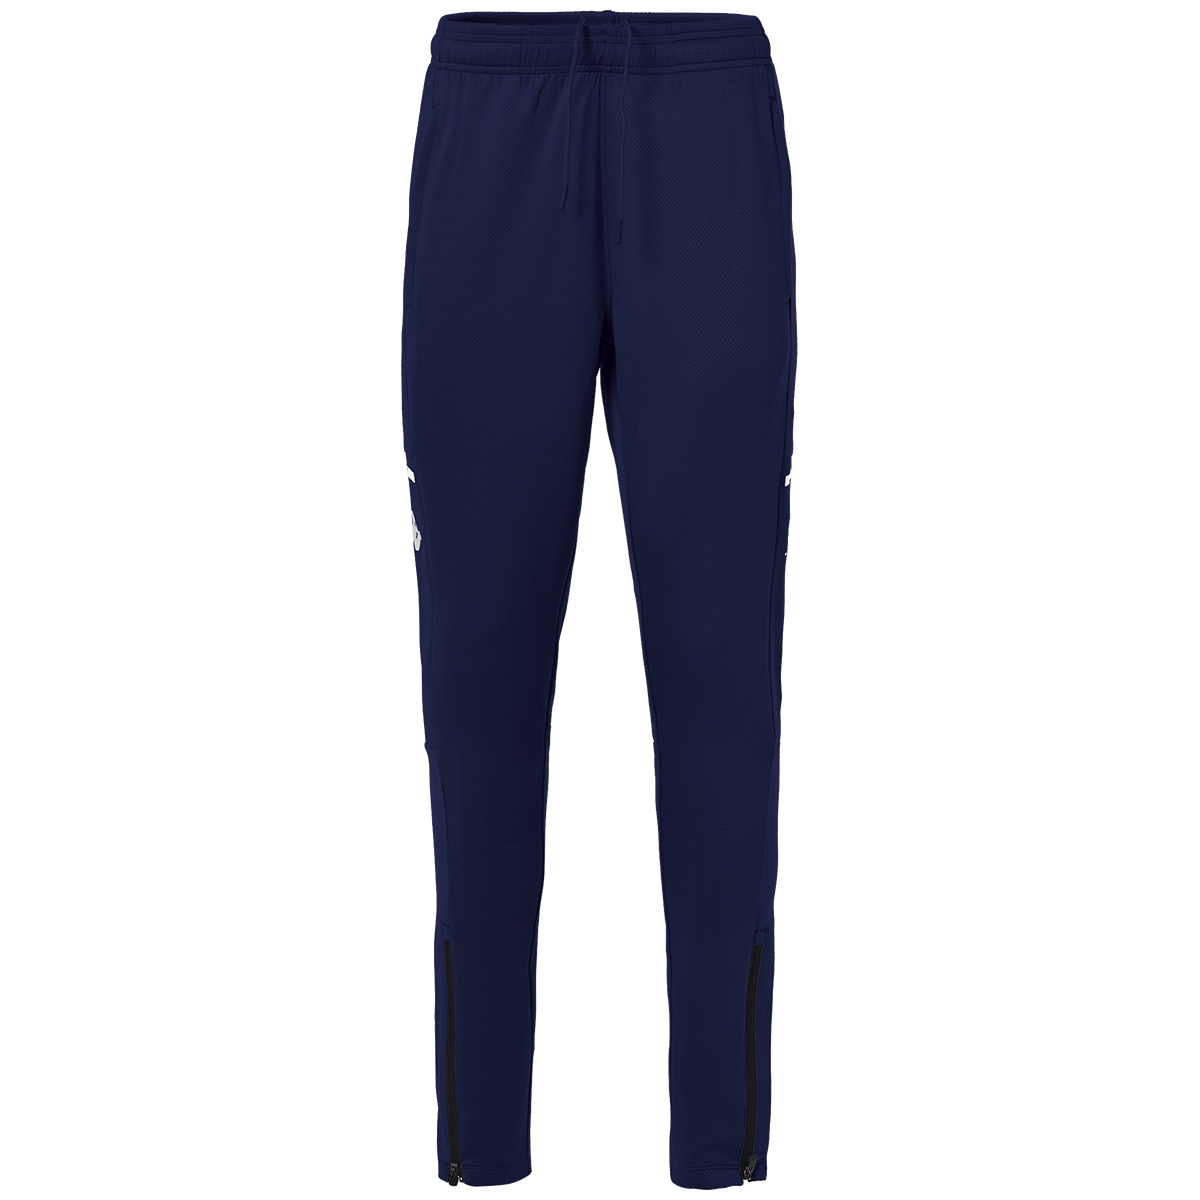 Pantalón Abunszip Pro  4 Azul Hombre - Imagen 1